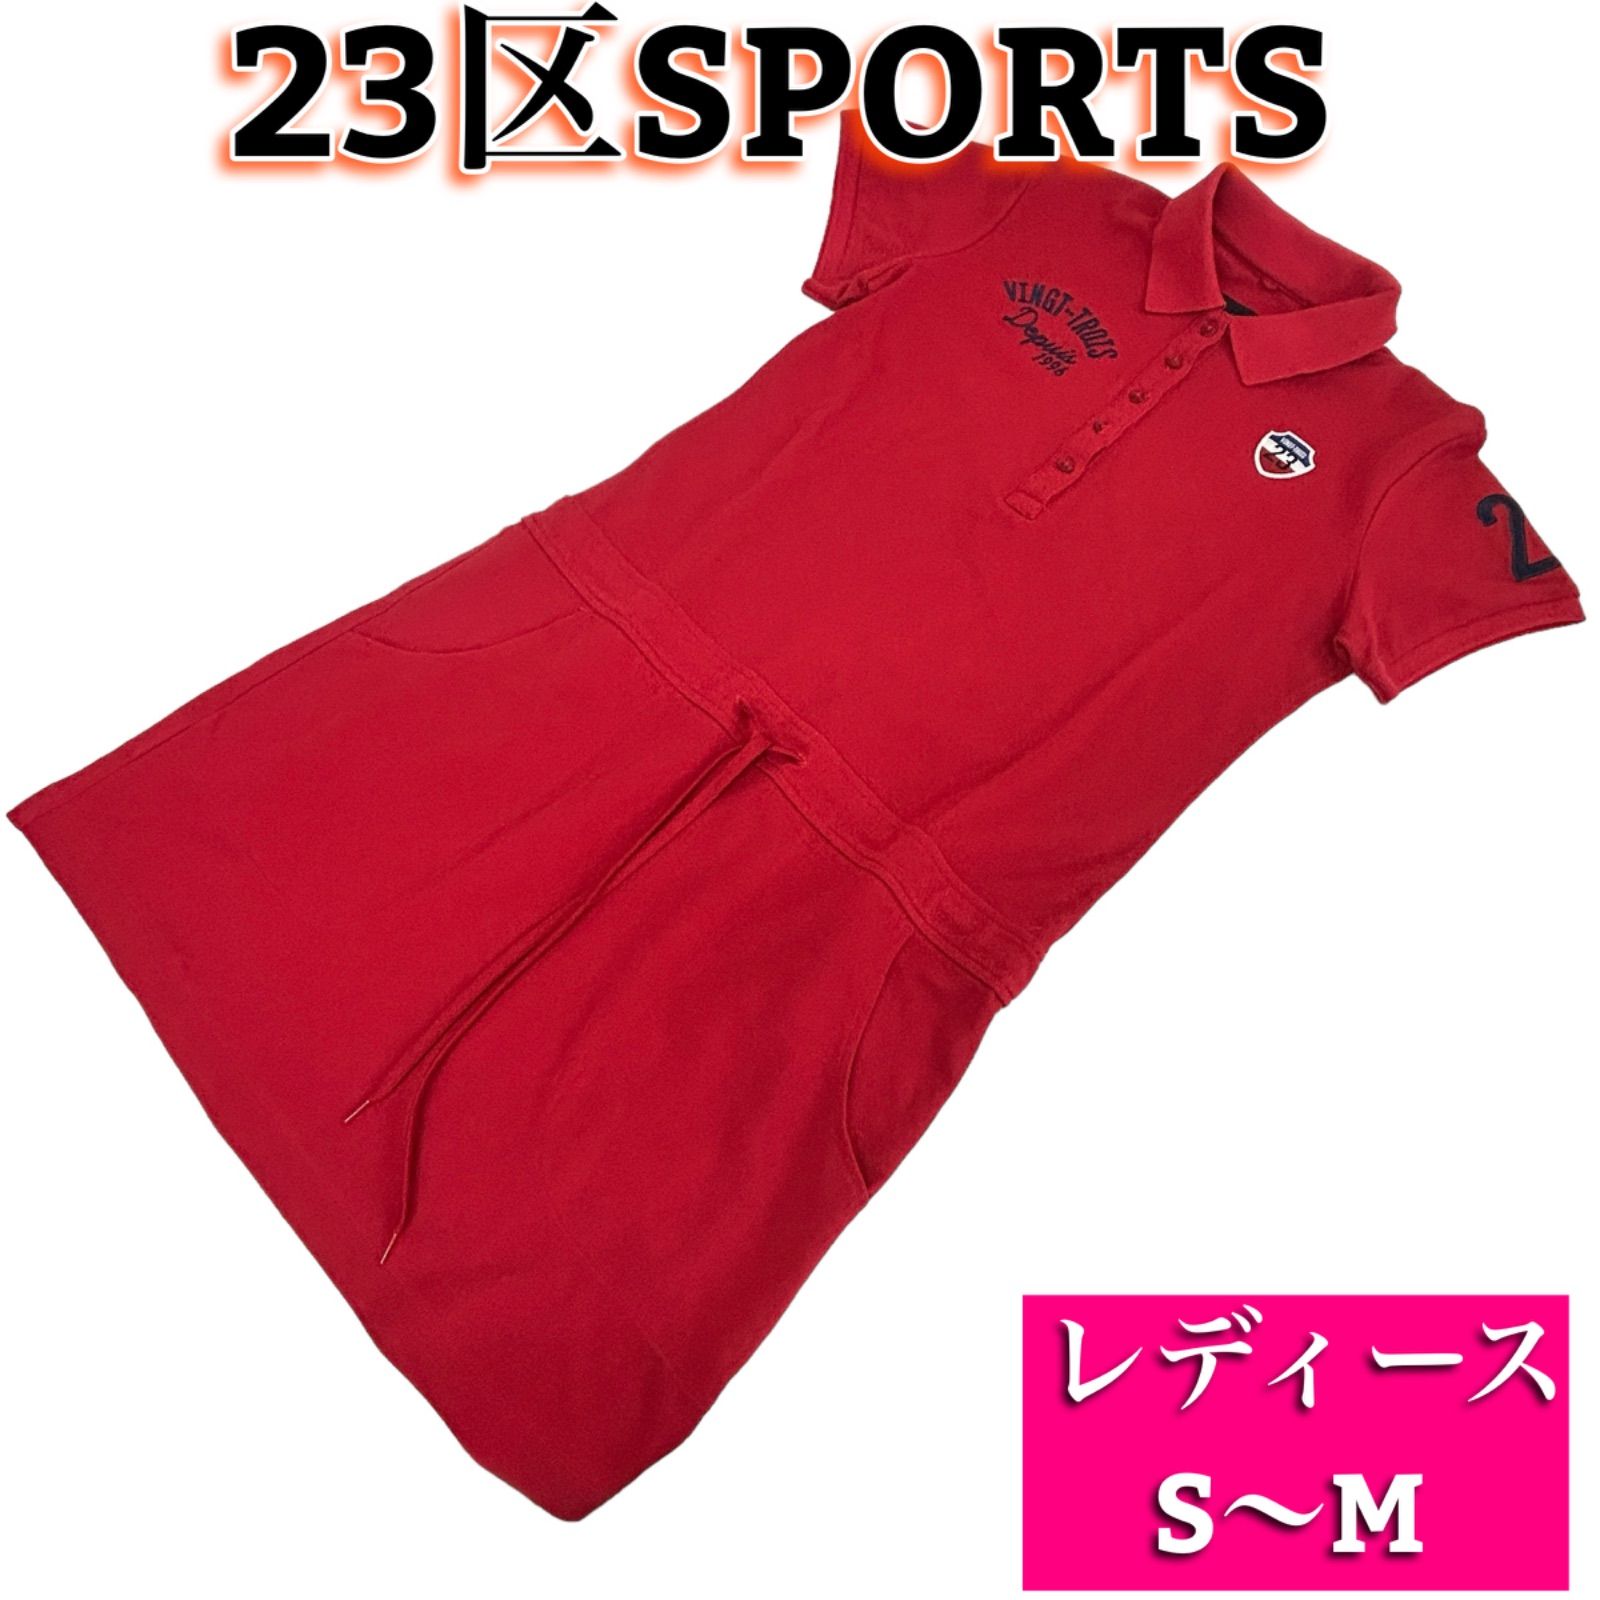 23区SPORTS レディース ゴルフウェア ポロシャツ ワンピース サイズS